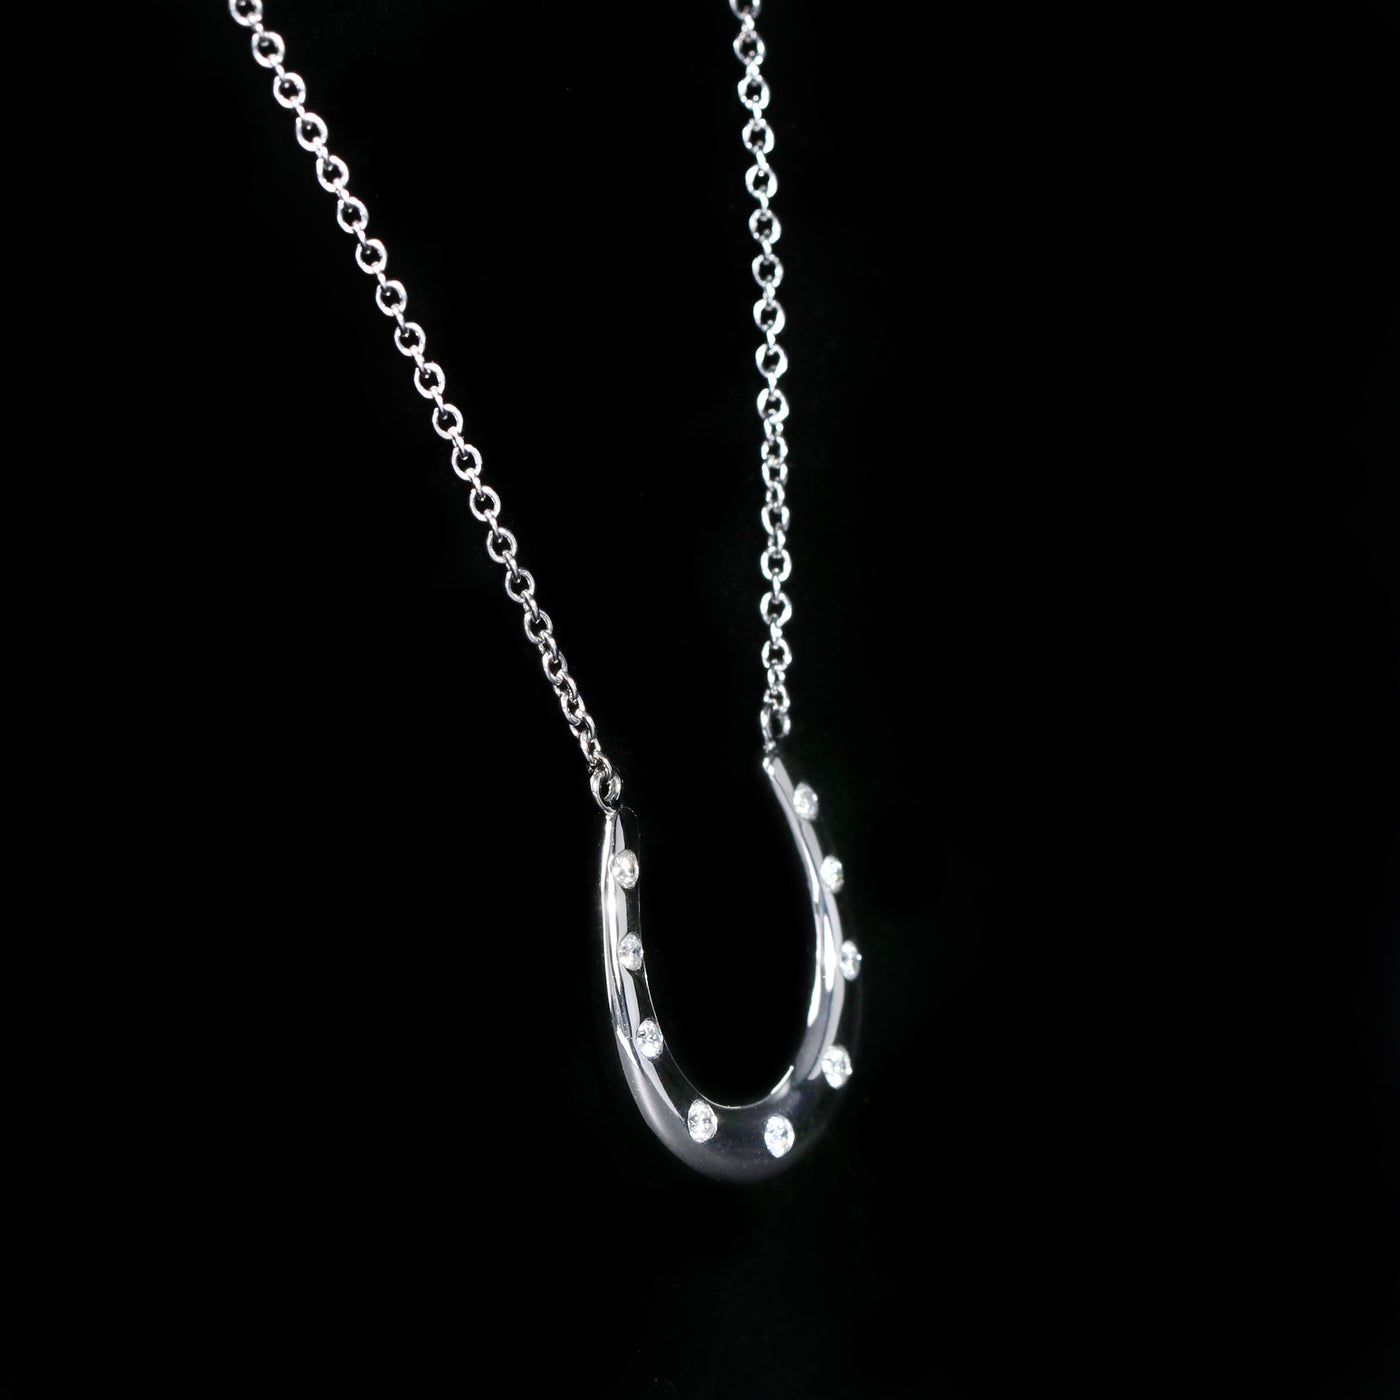 14K White Gold 0.09 Carat Diamond Horseshoe Necklace